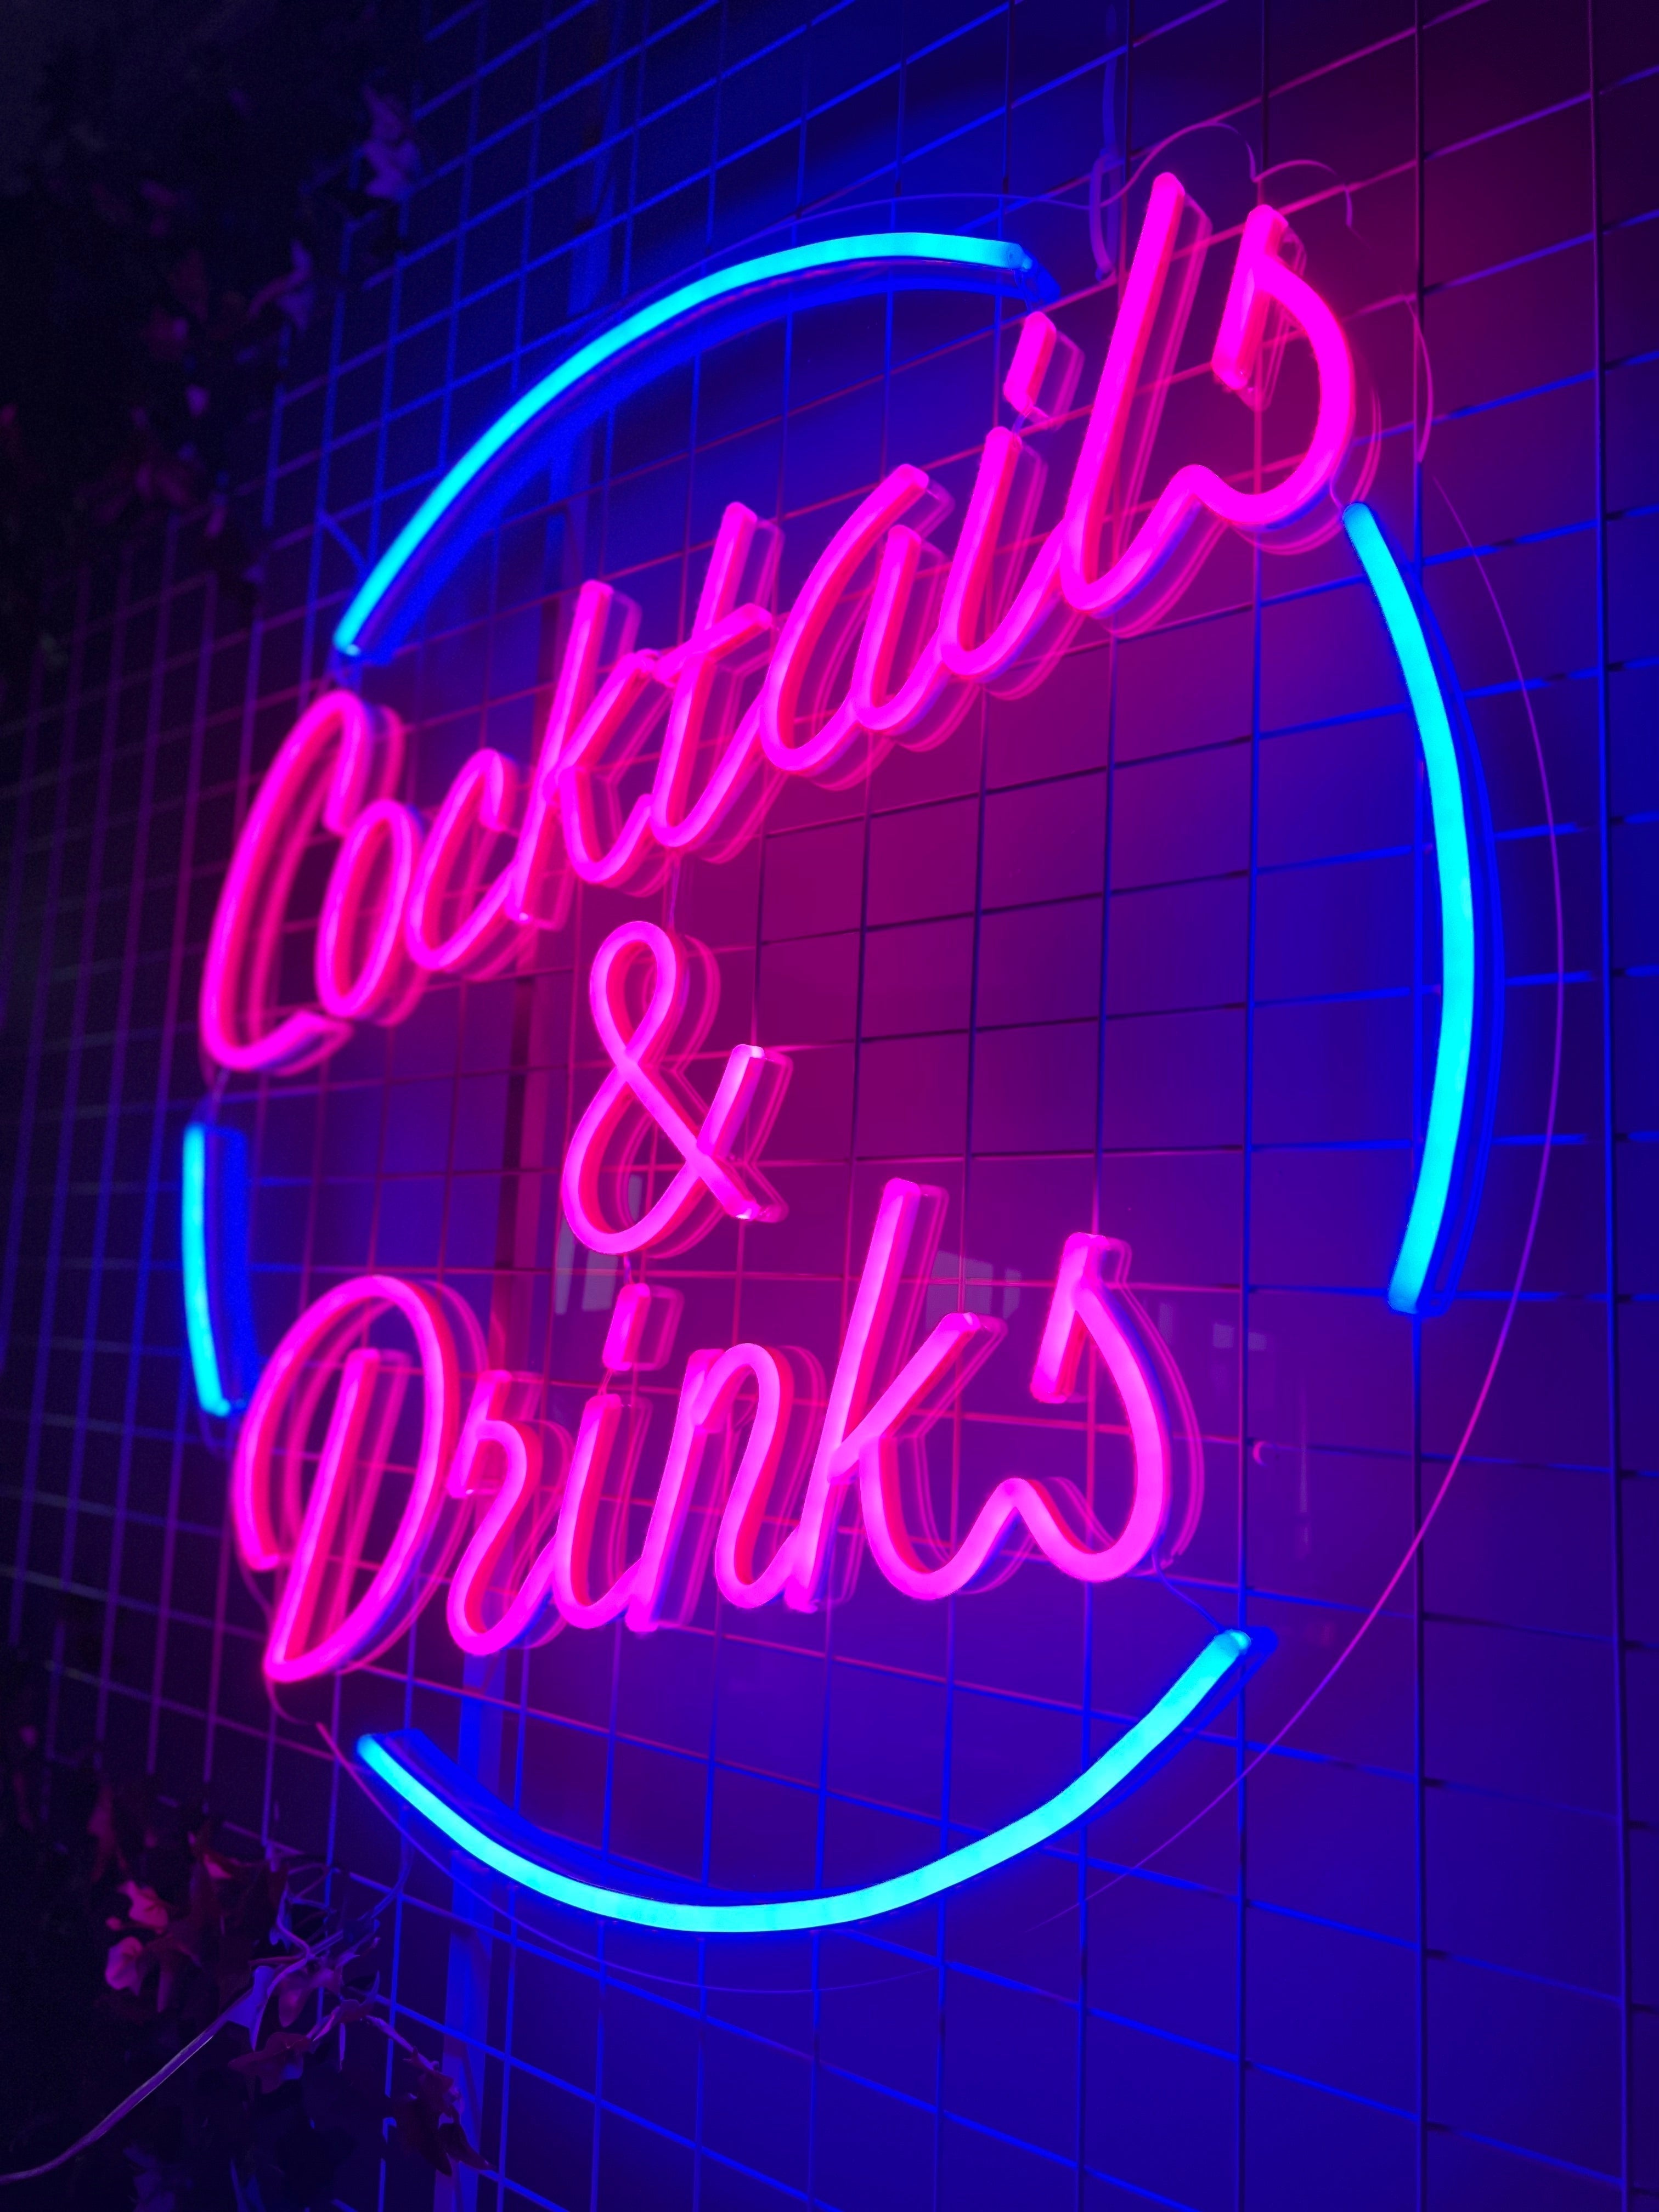 Skap en livlig stemning med 'cocktails &amp; drinks' led neonskilt. Dette skiltet er ideelt for barer og nattklubber, og tilbyr en sjarmerende belysning med sine mørkrosa og mørkeblå farger. Skap en perfekt atmosfære for sosiale sammenkomster eller som et blikkfang i et hvilket som helst lokale.